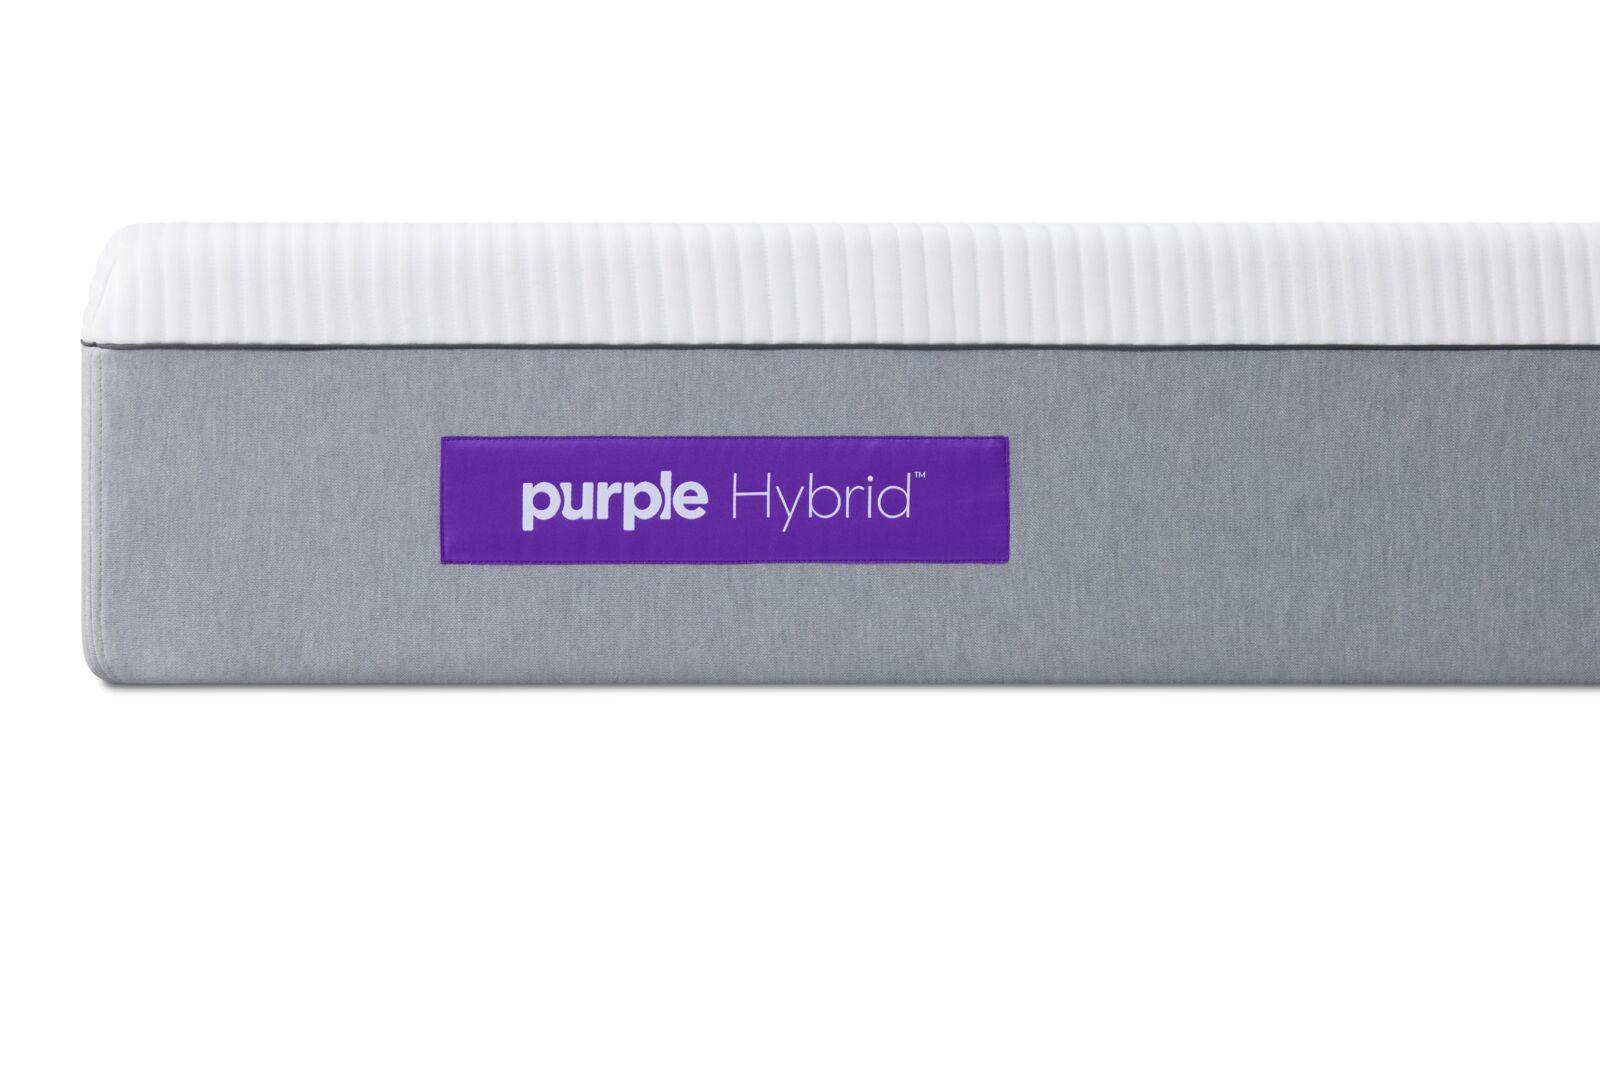 Purple Hybrid 2 full,Purple